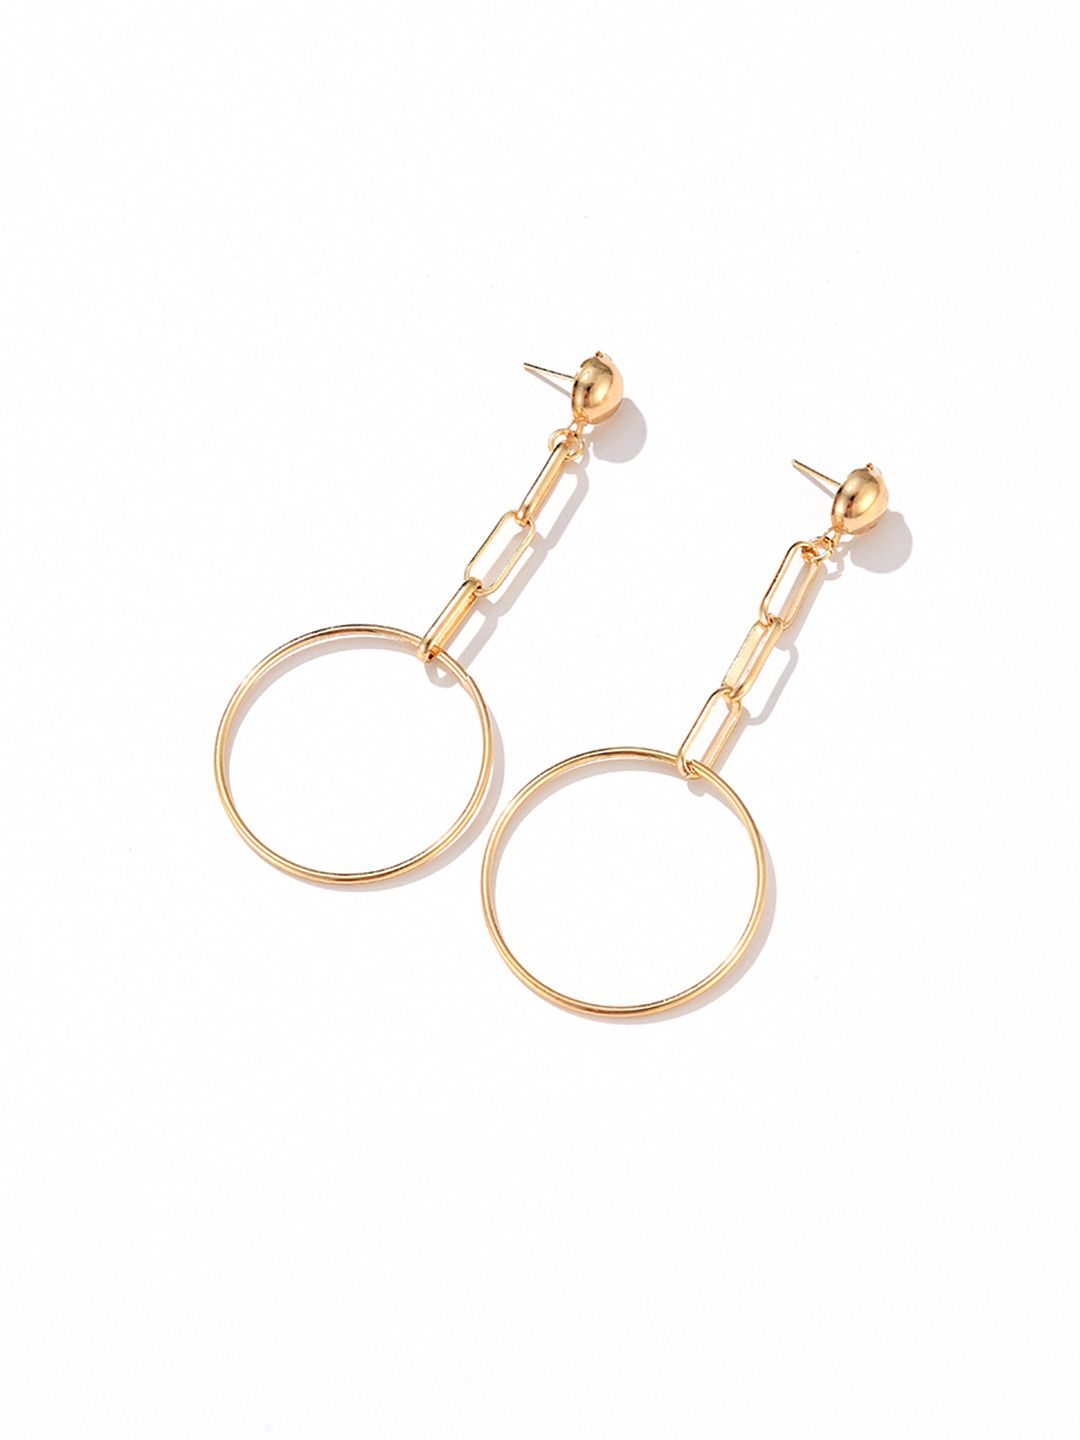 URBANIC Gold-Toned Circular Drop Earrings Price in India